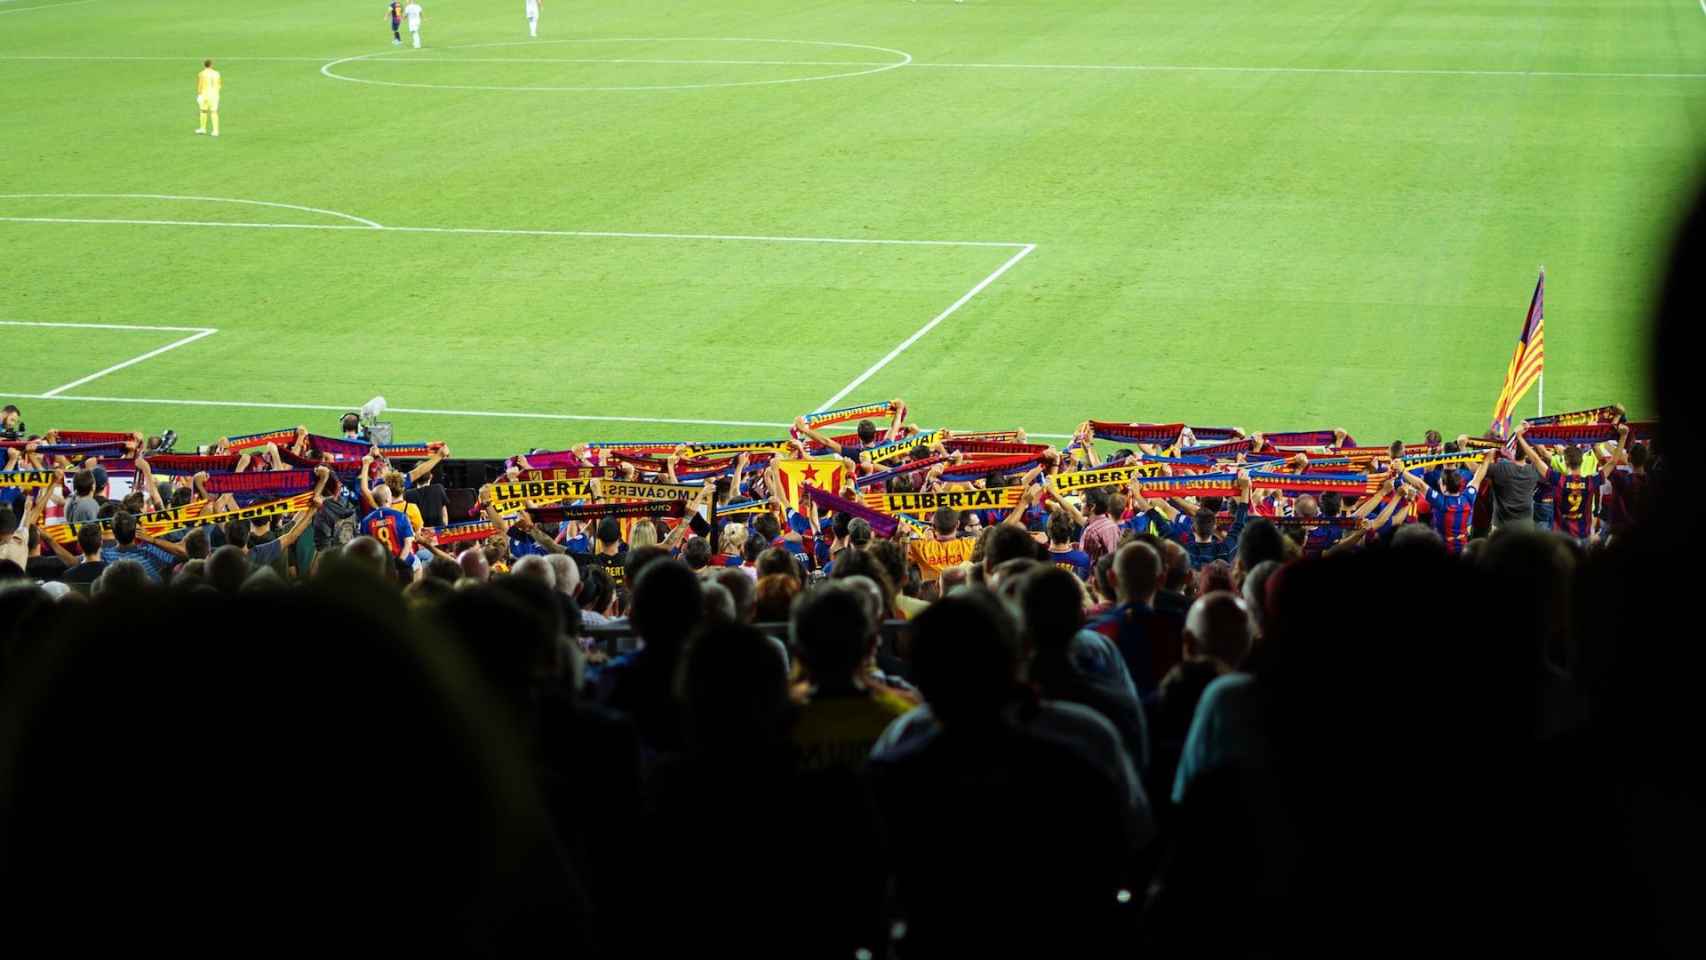 Despliegue de bufandas en un Real Madrid - Barcelona / UNSPLASH